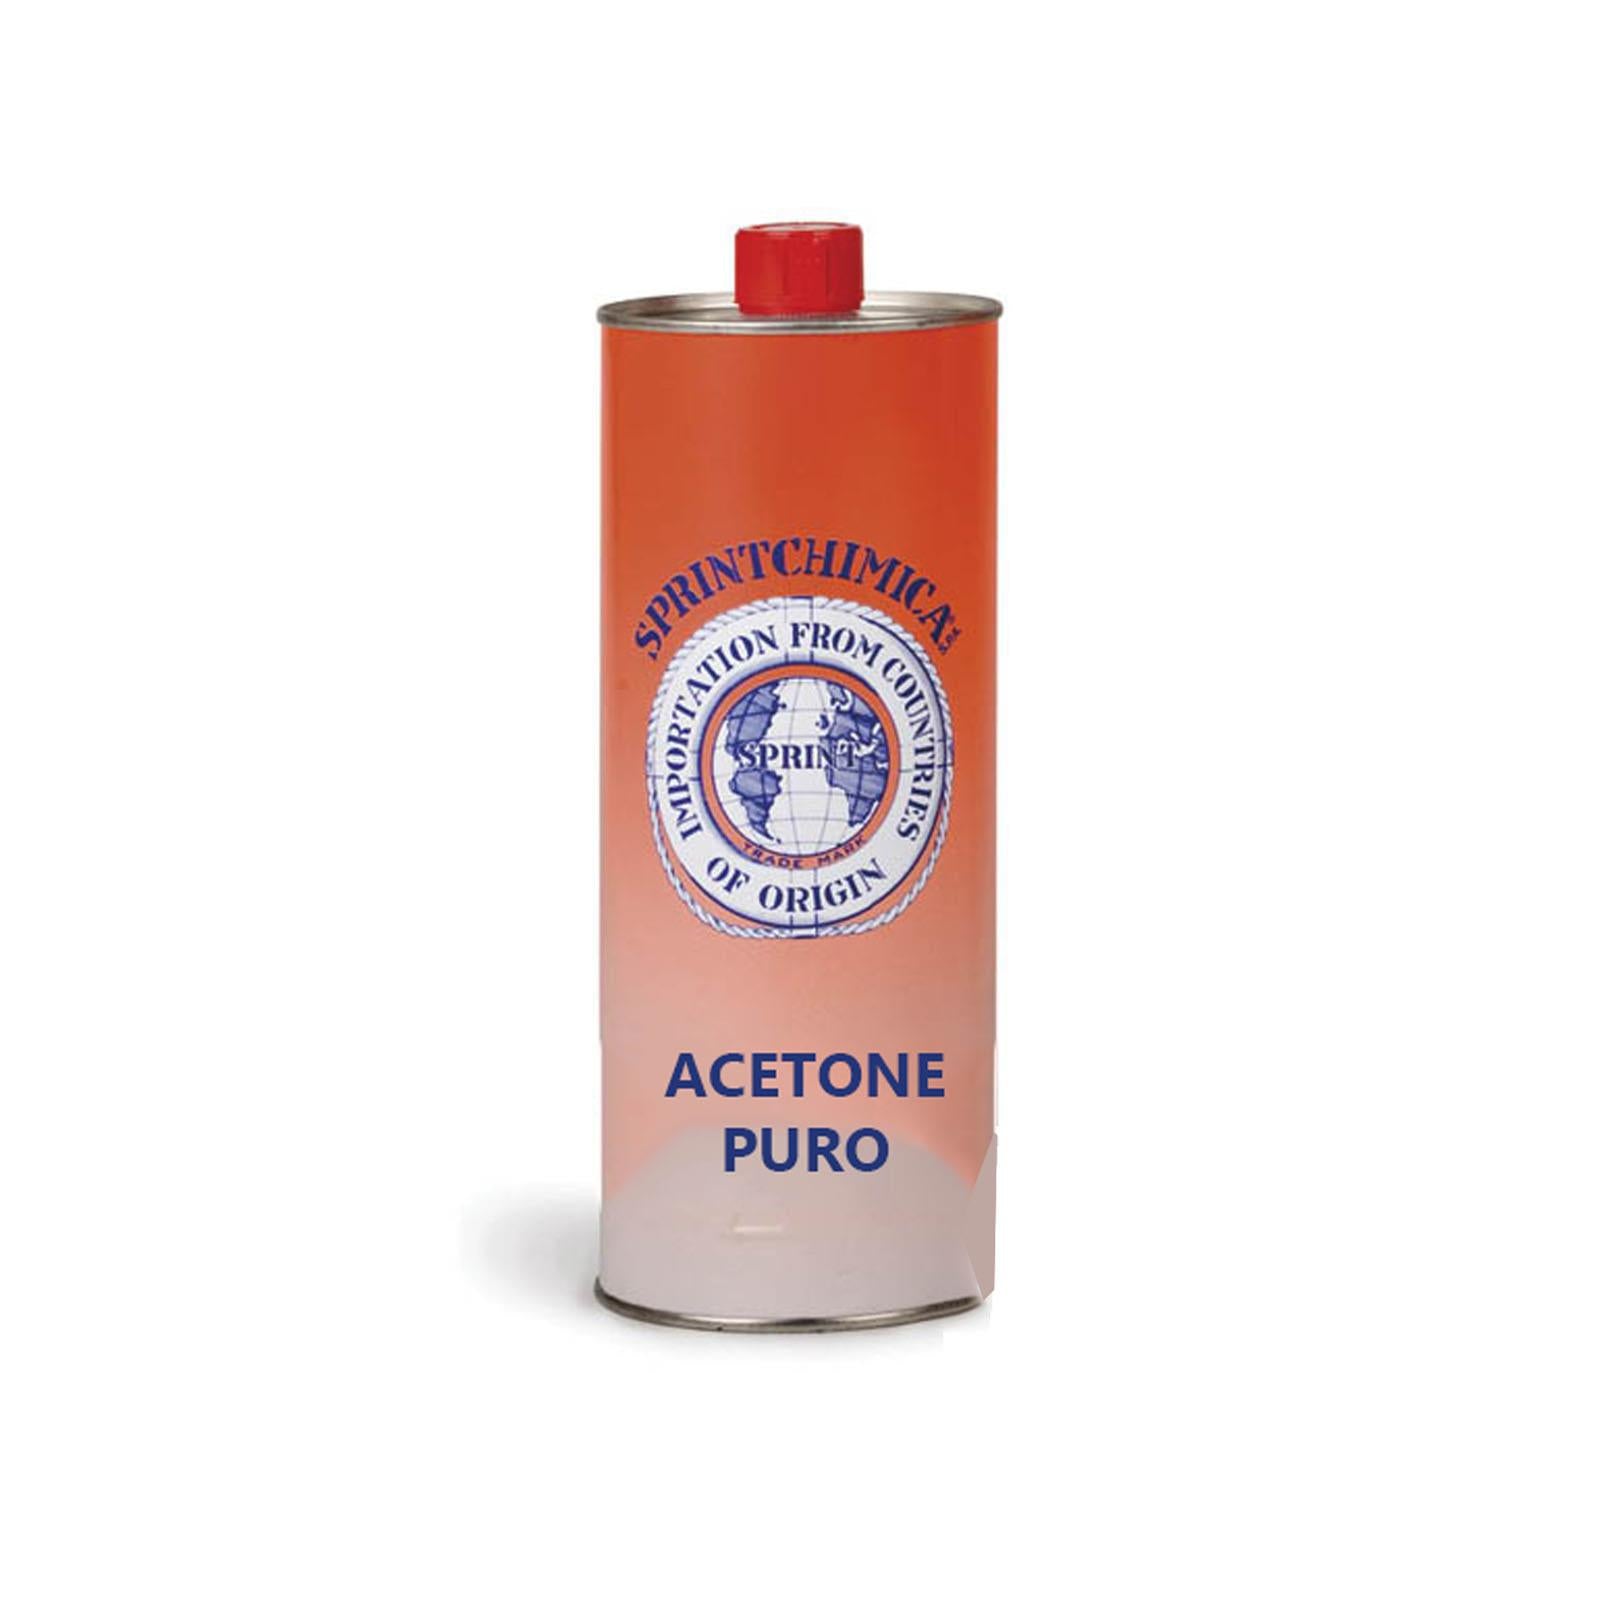 Acetone puro solvente per sgrassare smacchiare conf. 1Lt.